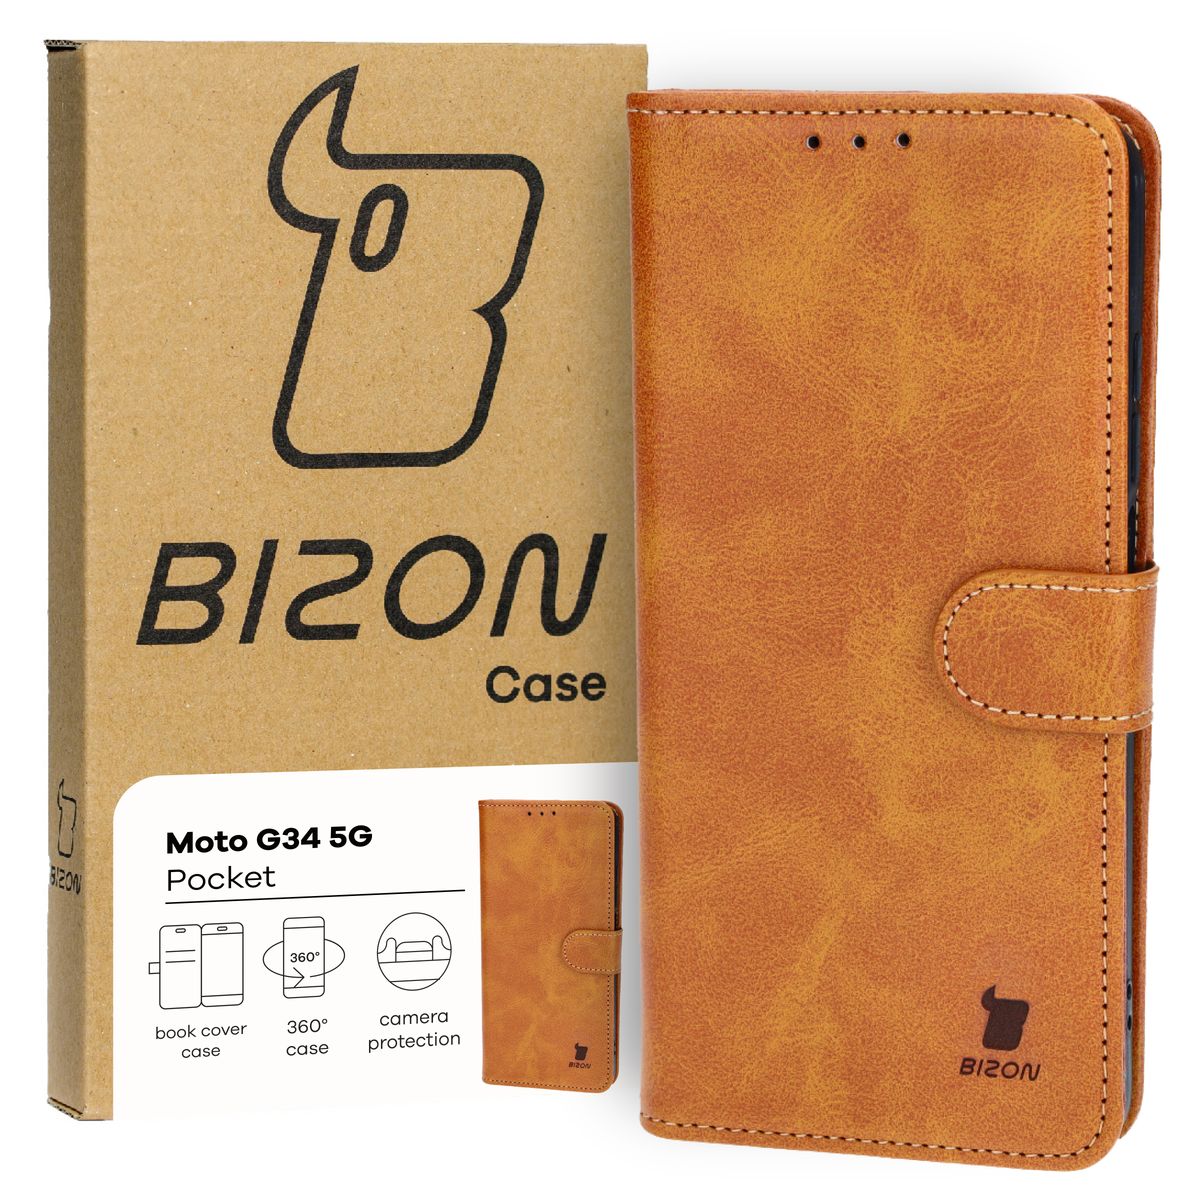 Schutzhülle für Motorola Moto G34 5G, Bizon Case Pocket, Braun